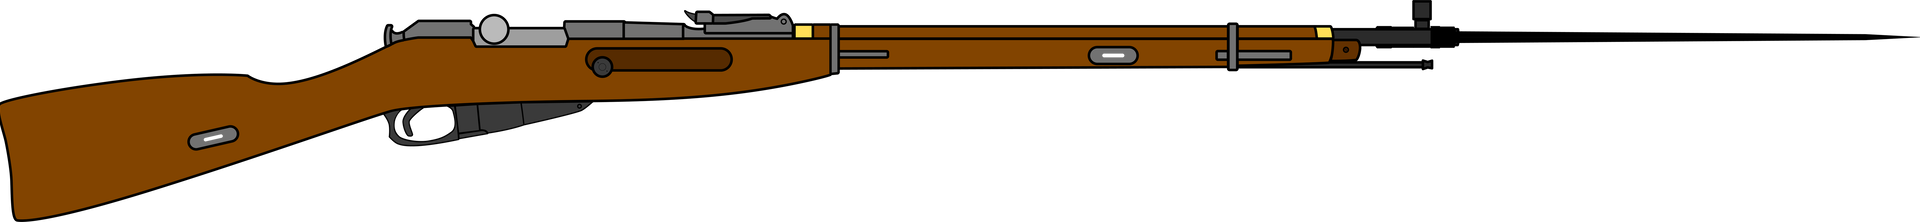 Mosin-nagant M91/30 With Bayonet - Mosin–nagant (1920x222)